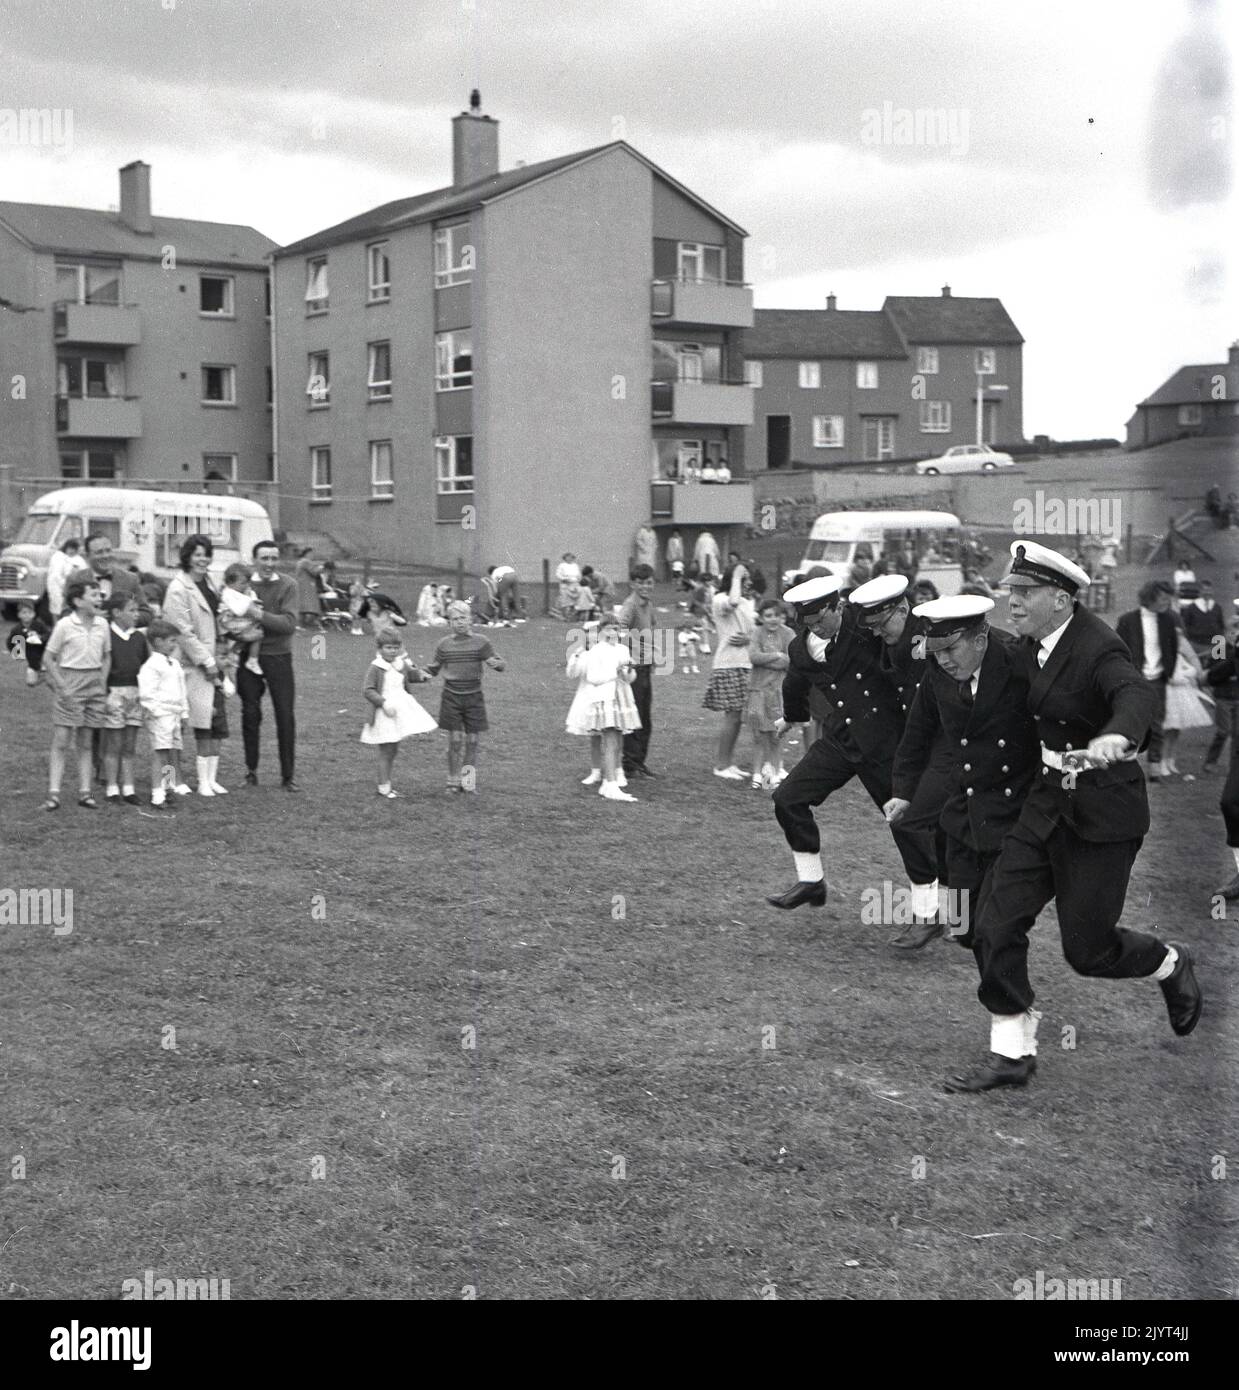 1965, officiers de marine historiques en uniforme participant à une course à trois pattes dans un champ situé dans un domaine de logement à North Queensferry, Edimbourg, Écosse, Royaume-Uni, dans le cadre de la journée de gala du North Queensferry, une journée communautaire pour les résidents du domaine, Banque D'Images